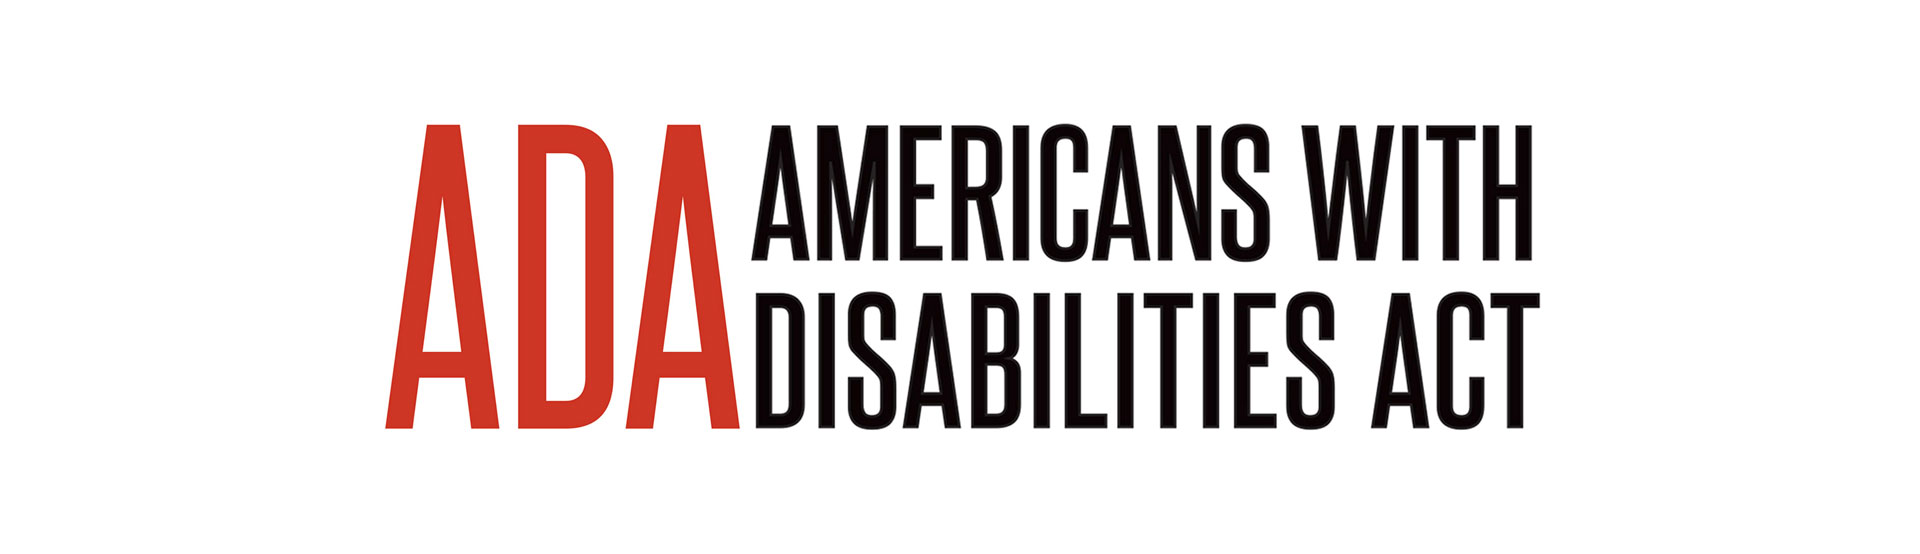 视障人士起诉宝可梦公司 认为其网站违反残疾人法案